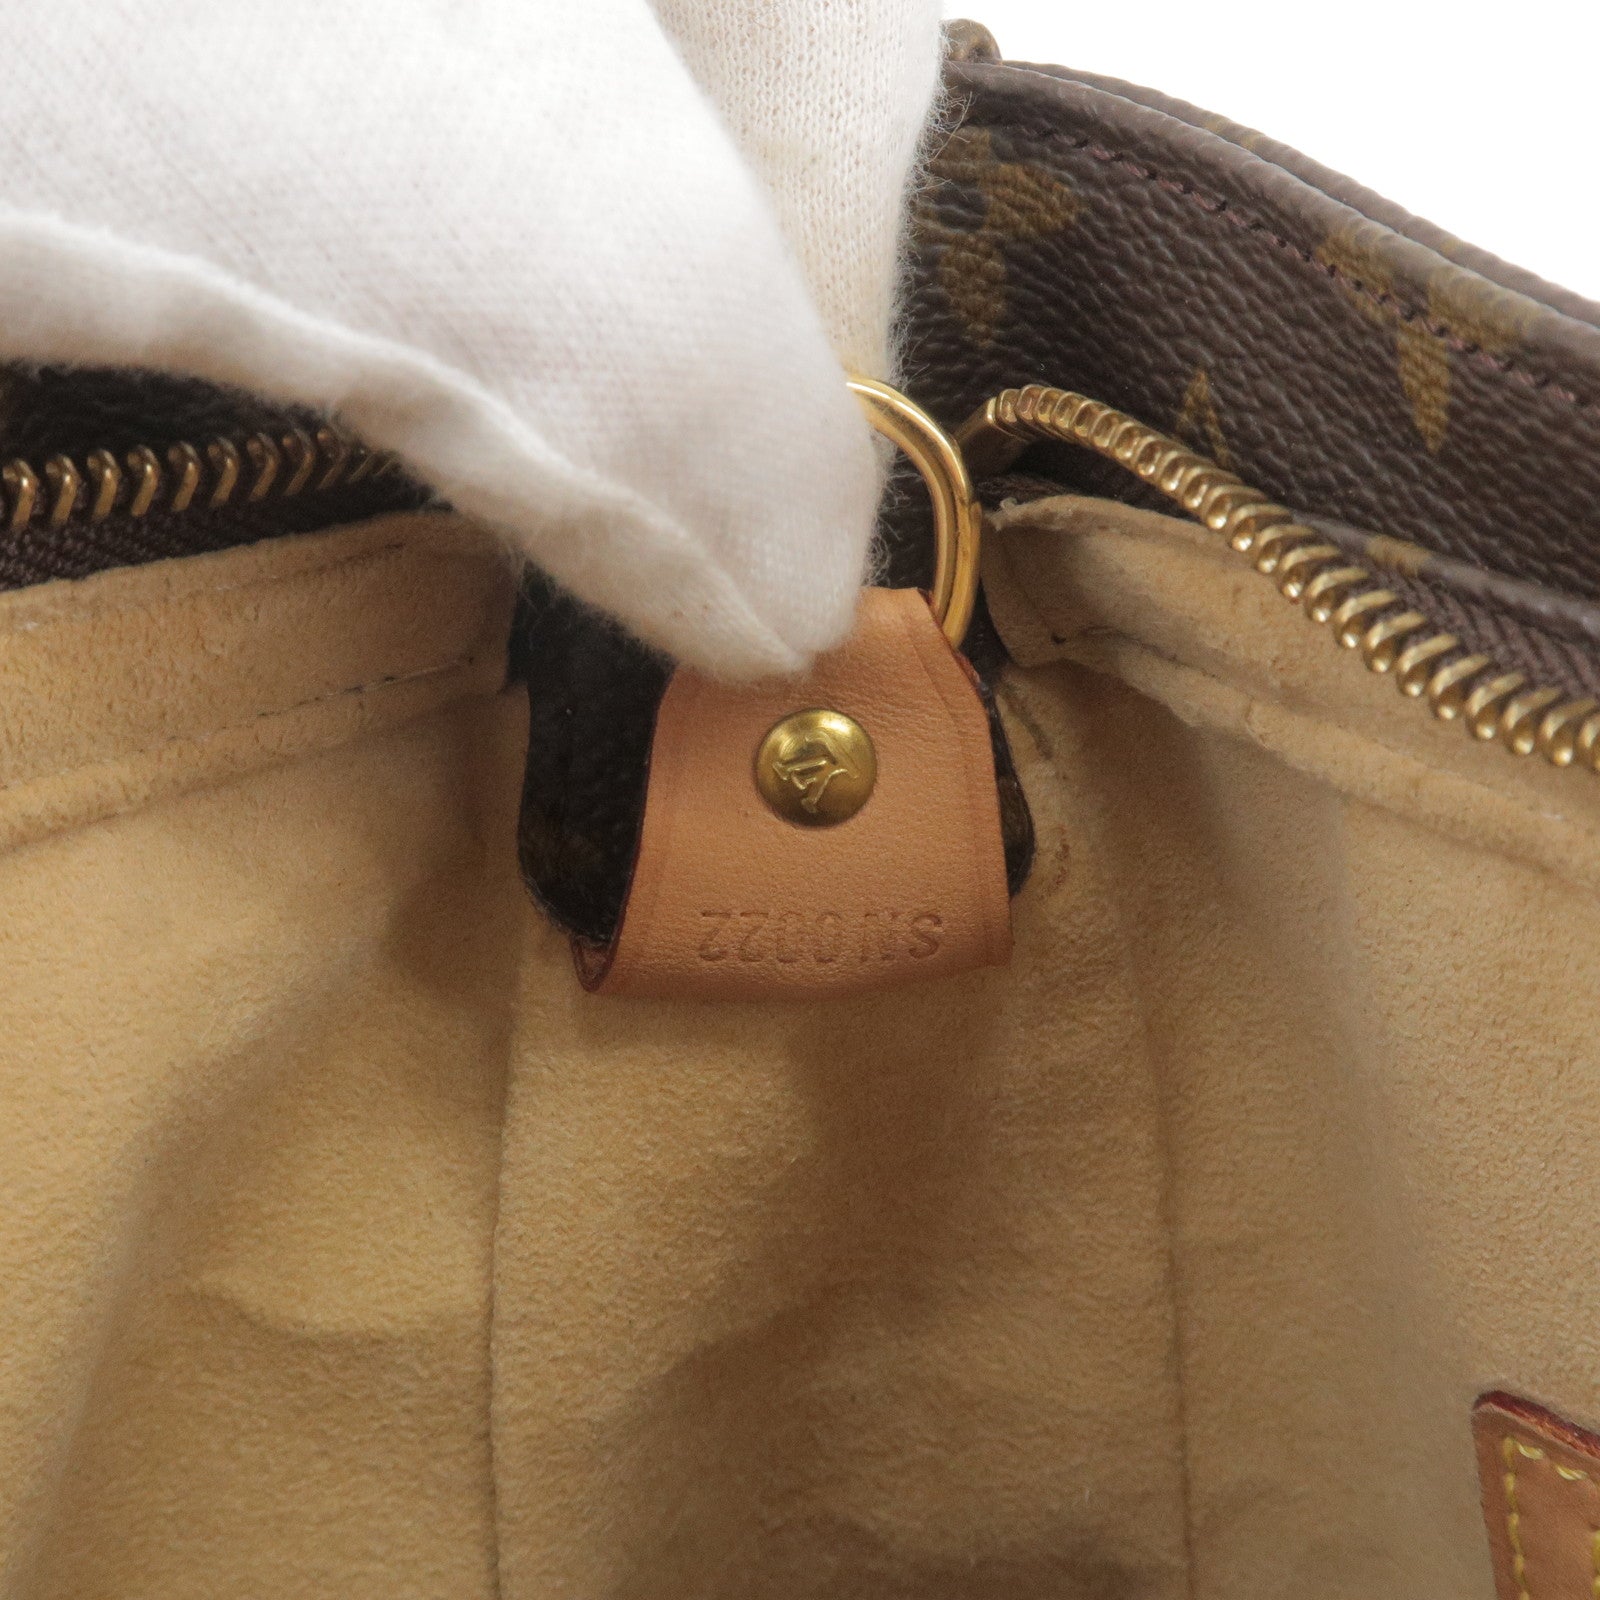 Louis Vuitton Monogram Nile GM Shoulder Bag Tote Bag Bag Used From Japan